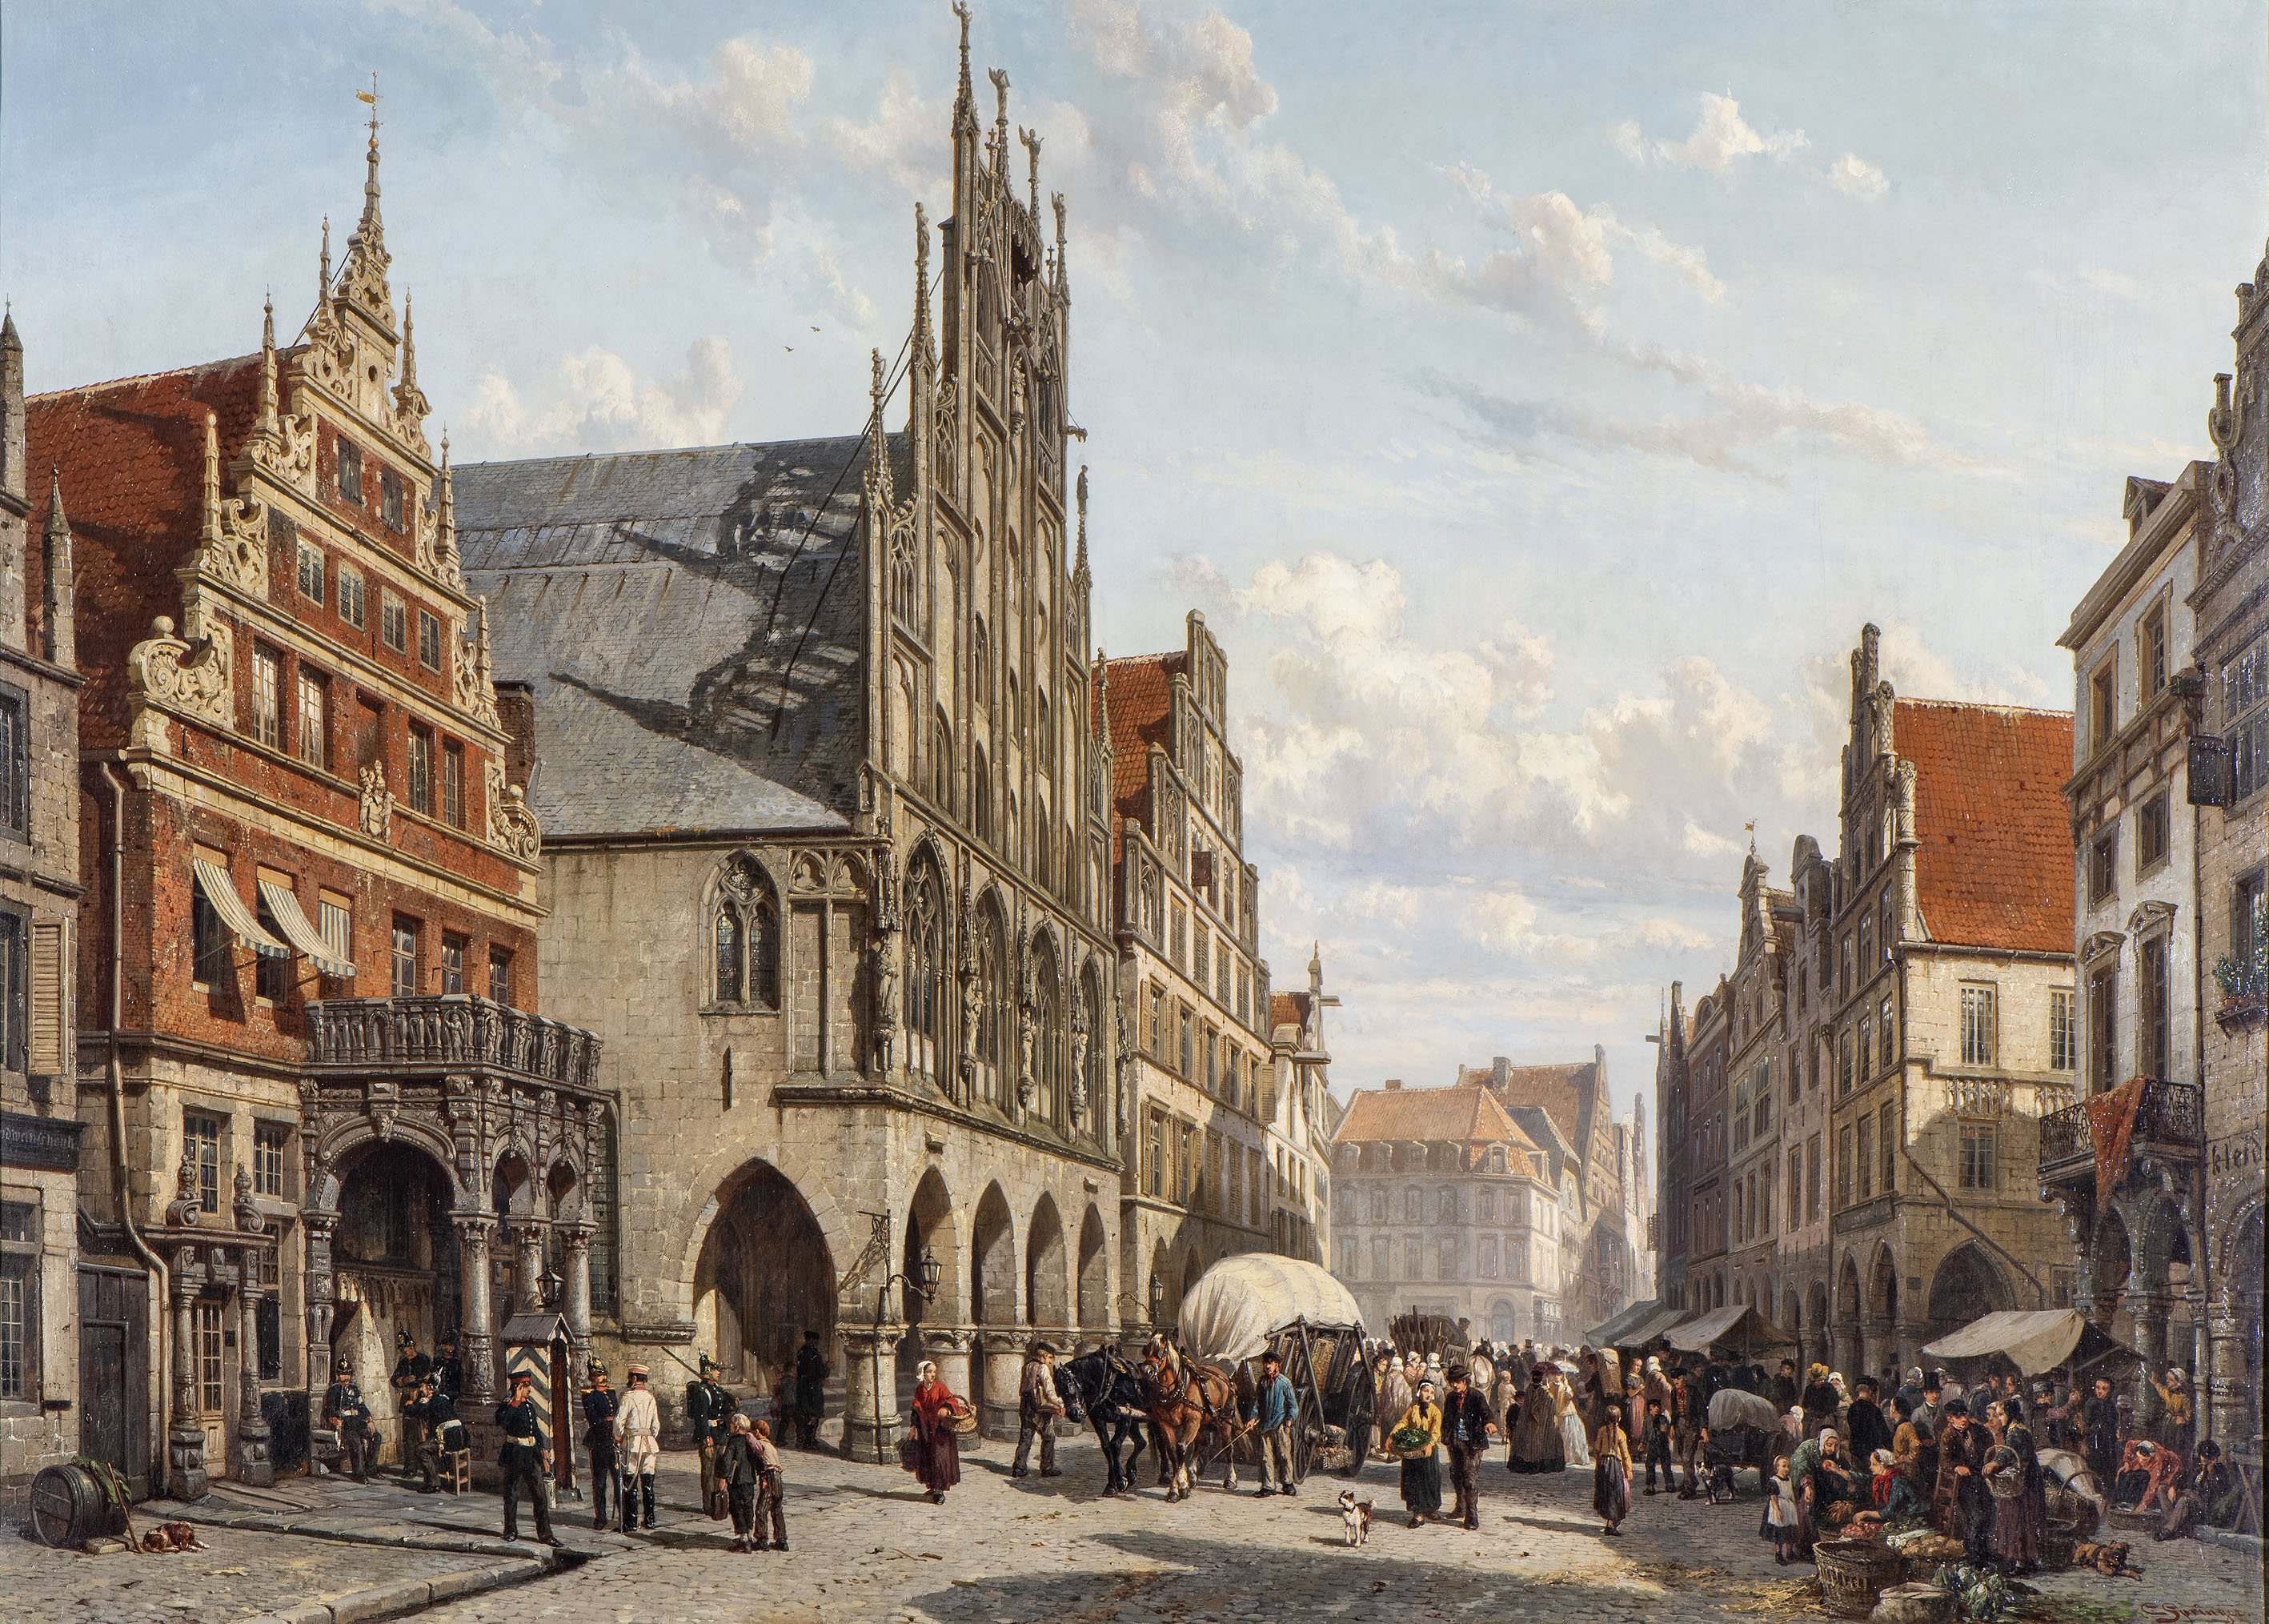 Cornelis Springer, Gemälde (Öl auf Leinwand) vom Prinzipalmarkt, datiert und signiert 1865/66./Stadtmuseum Münster.